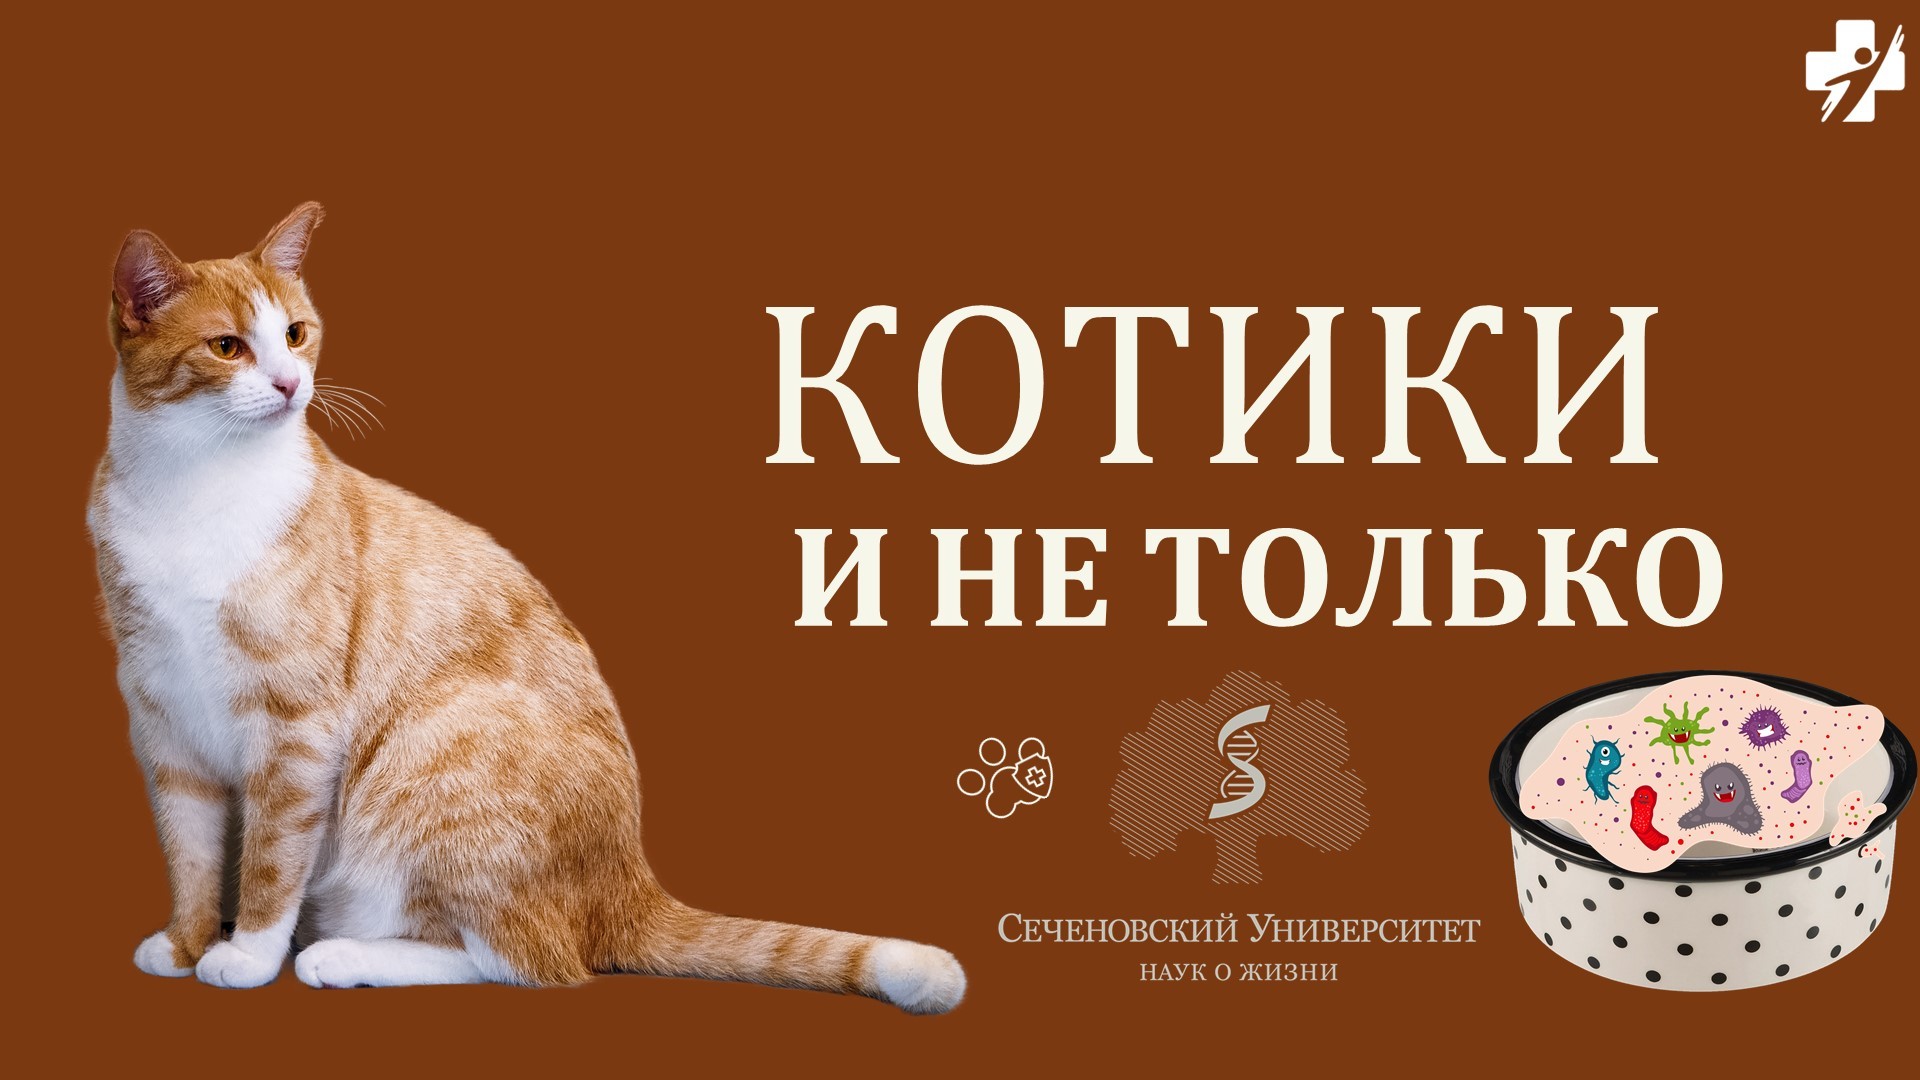 Как сделать содержание домашних и экзотических животных безопасным? Увлекательная лекция на экспозиции Минздрава России.